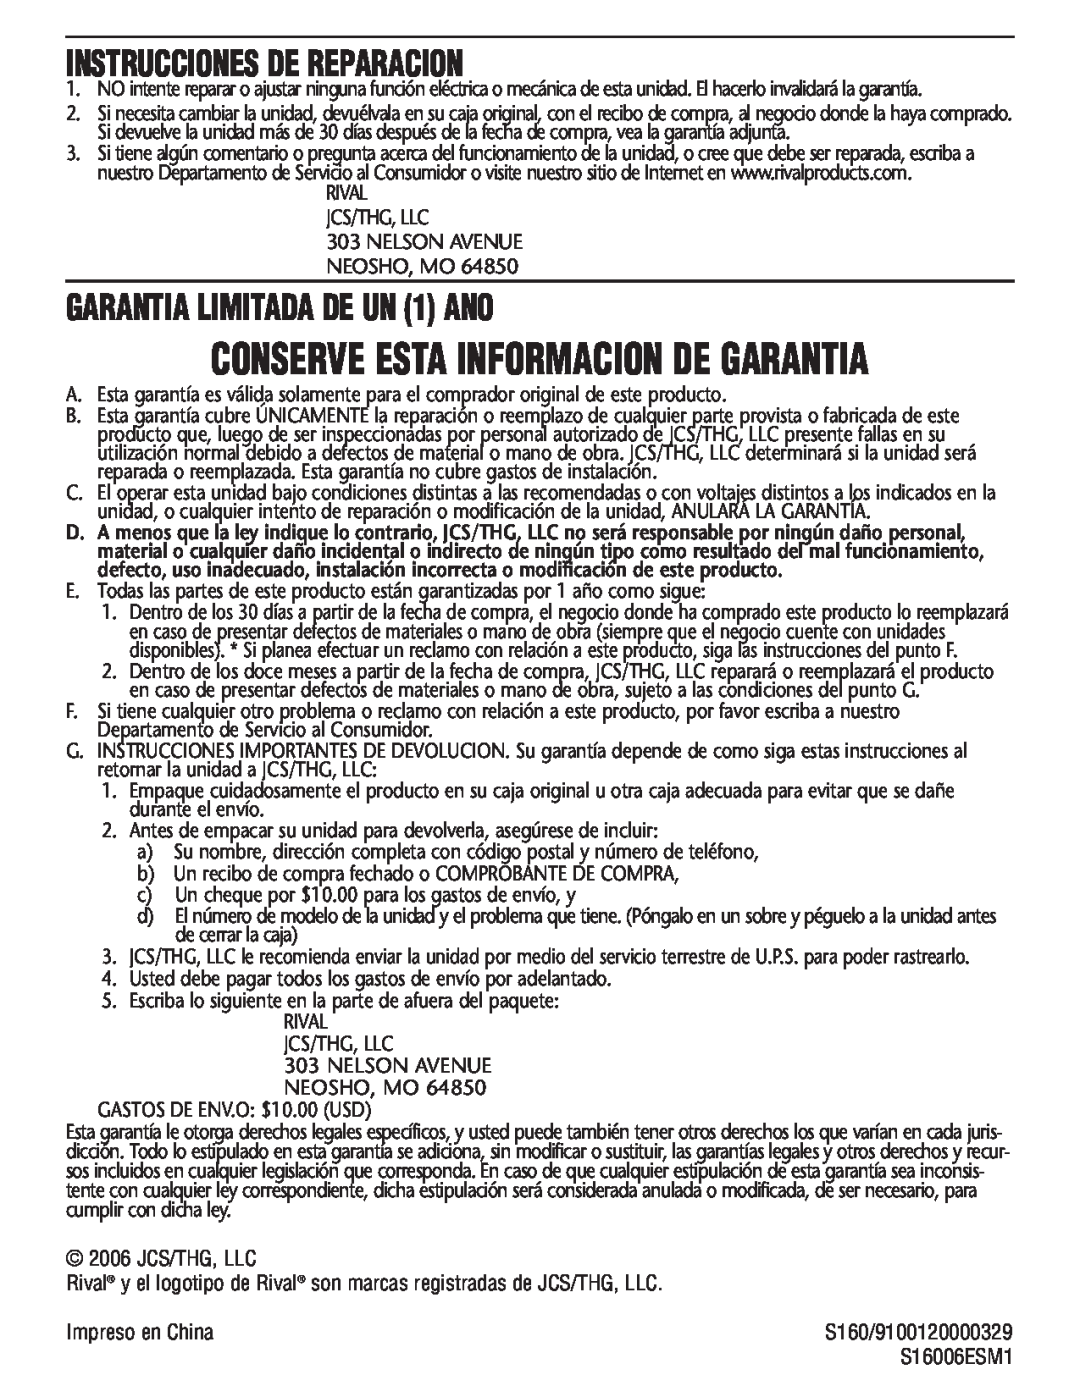 Rival S160 manual Conserve Esta Informacion De Garantia, Instrucciones De Reparacion, GARANTIA LIMITADA DE UN 1 ANO 